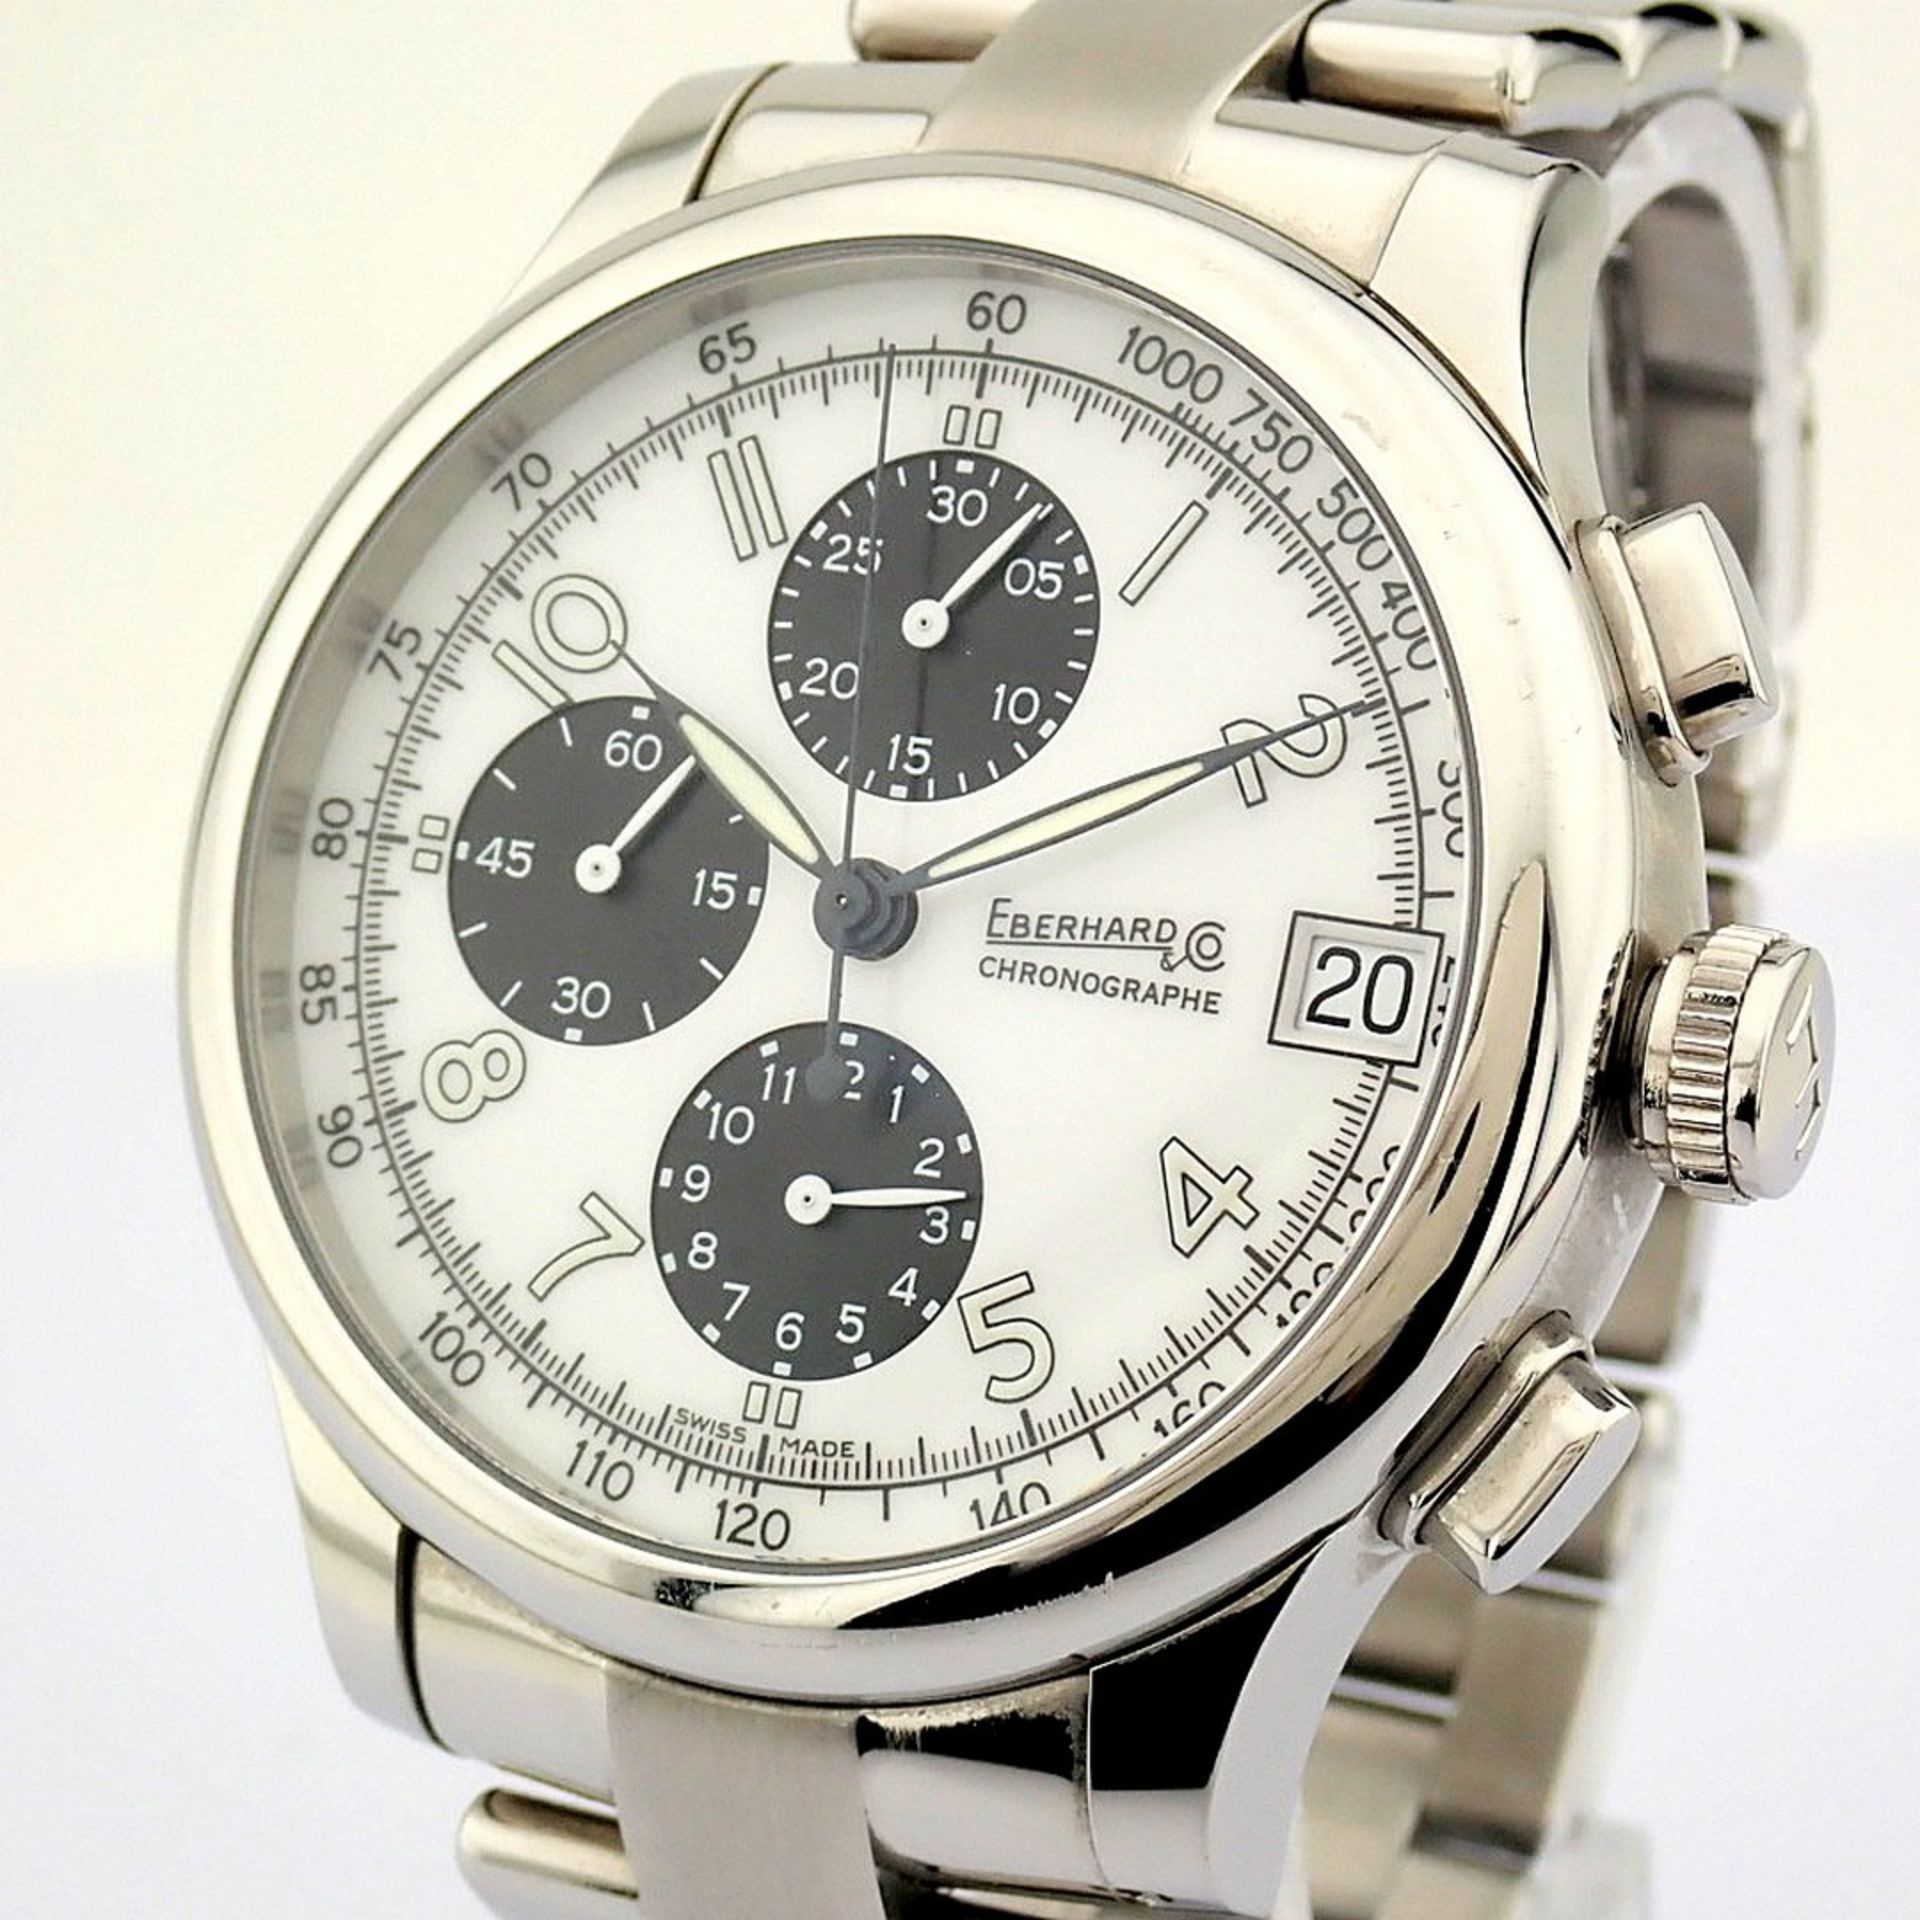 Eberhard & Co. / Traversetolo Chronograph Automatic - Gentlemen's Steel Wristwatch - Image 5 of 11